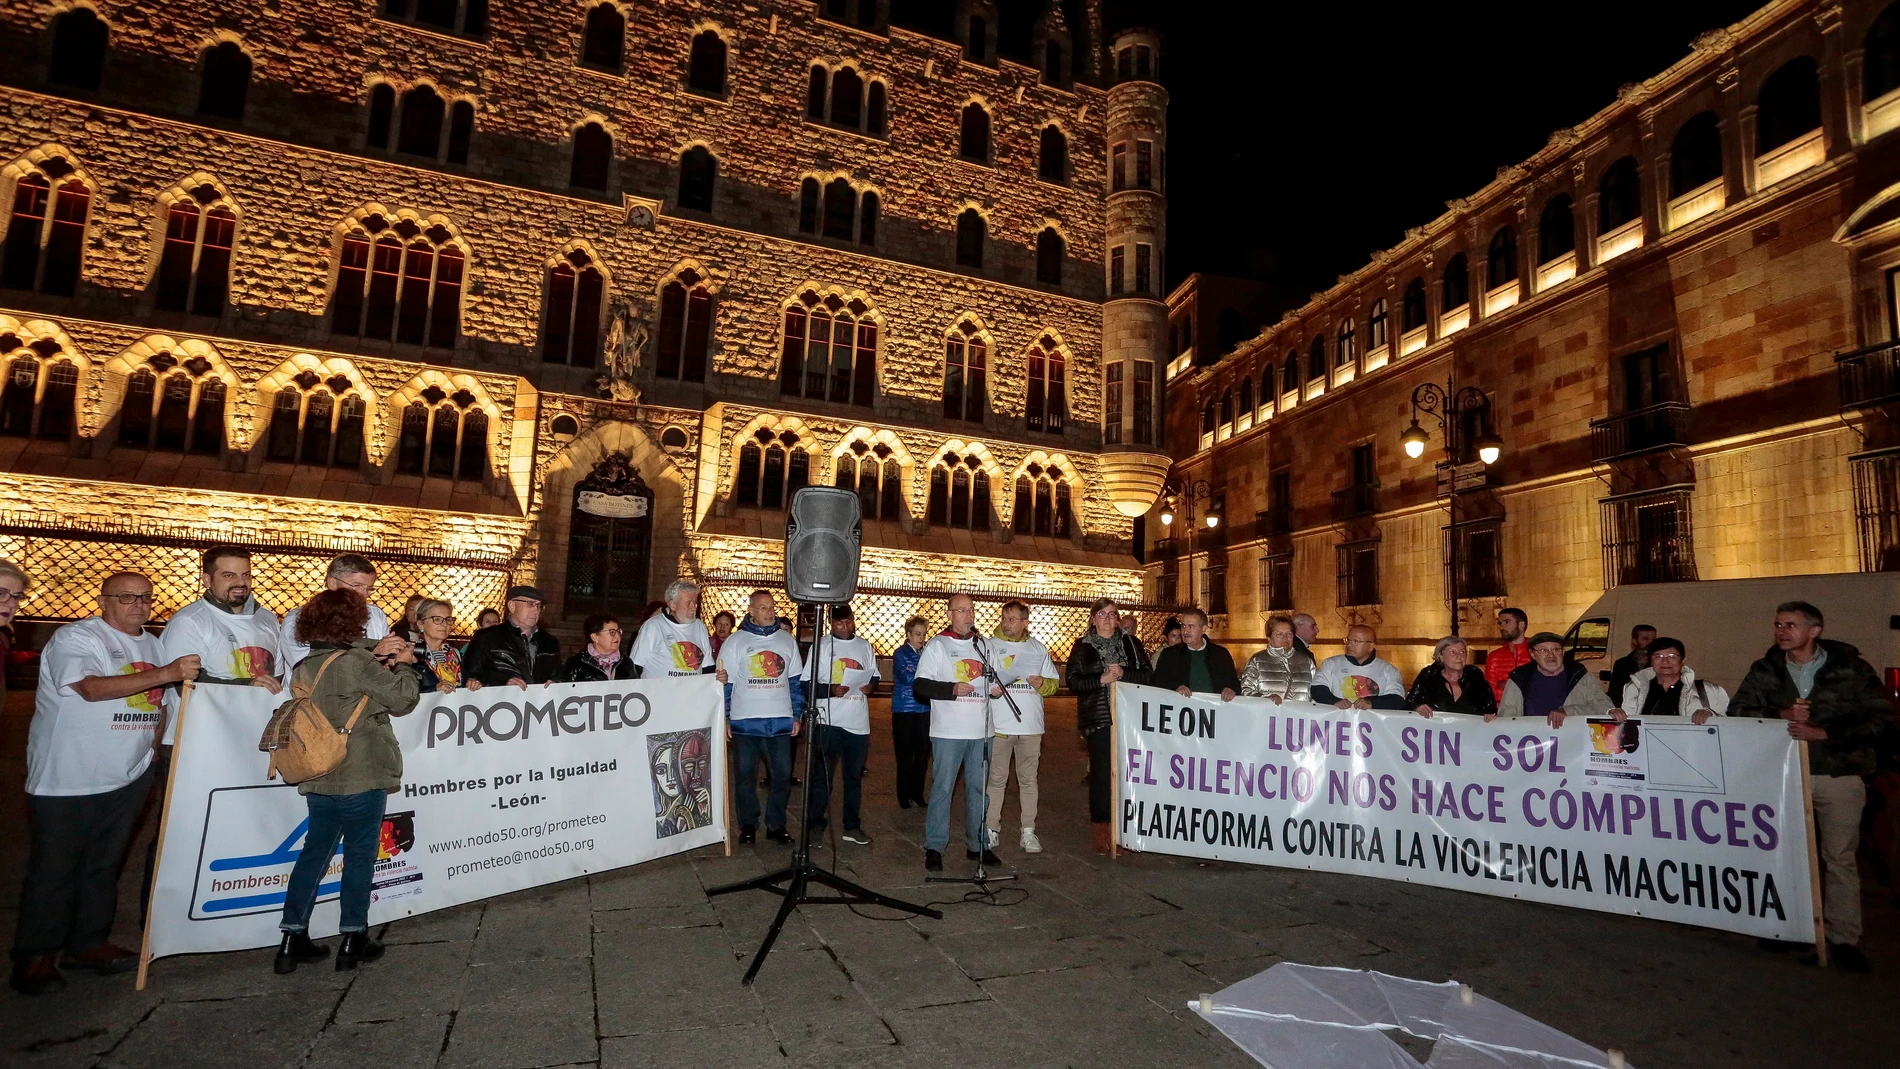 El grupo Prometeo-Hombres por la Igualdad celebra en León una rueda de hombres contra la violencia machista